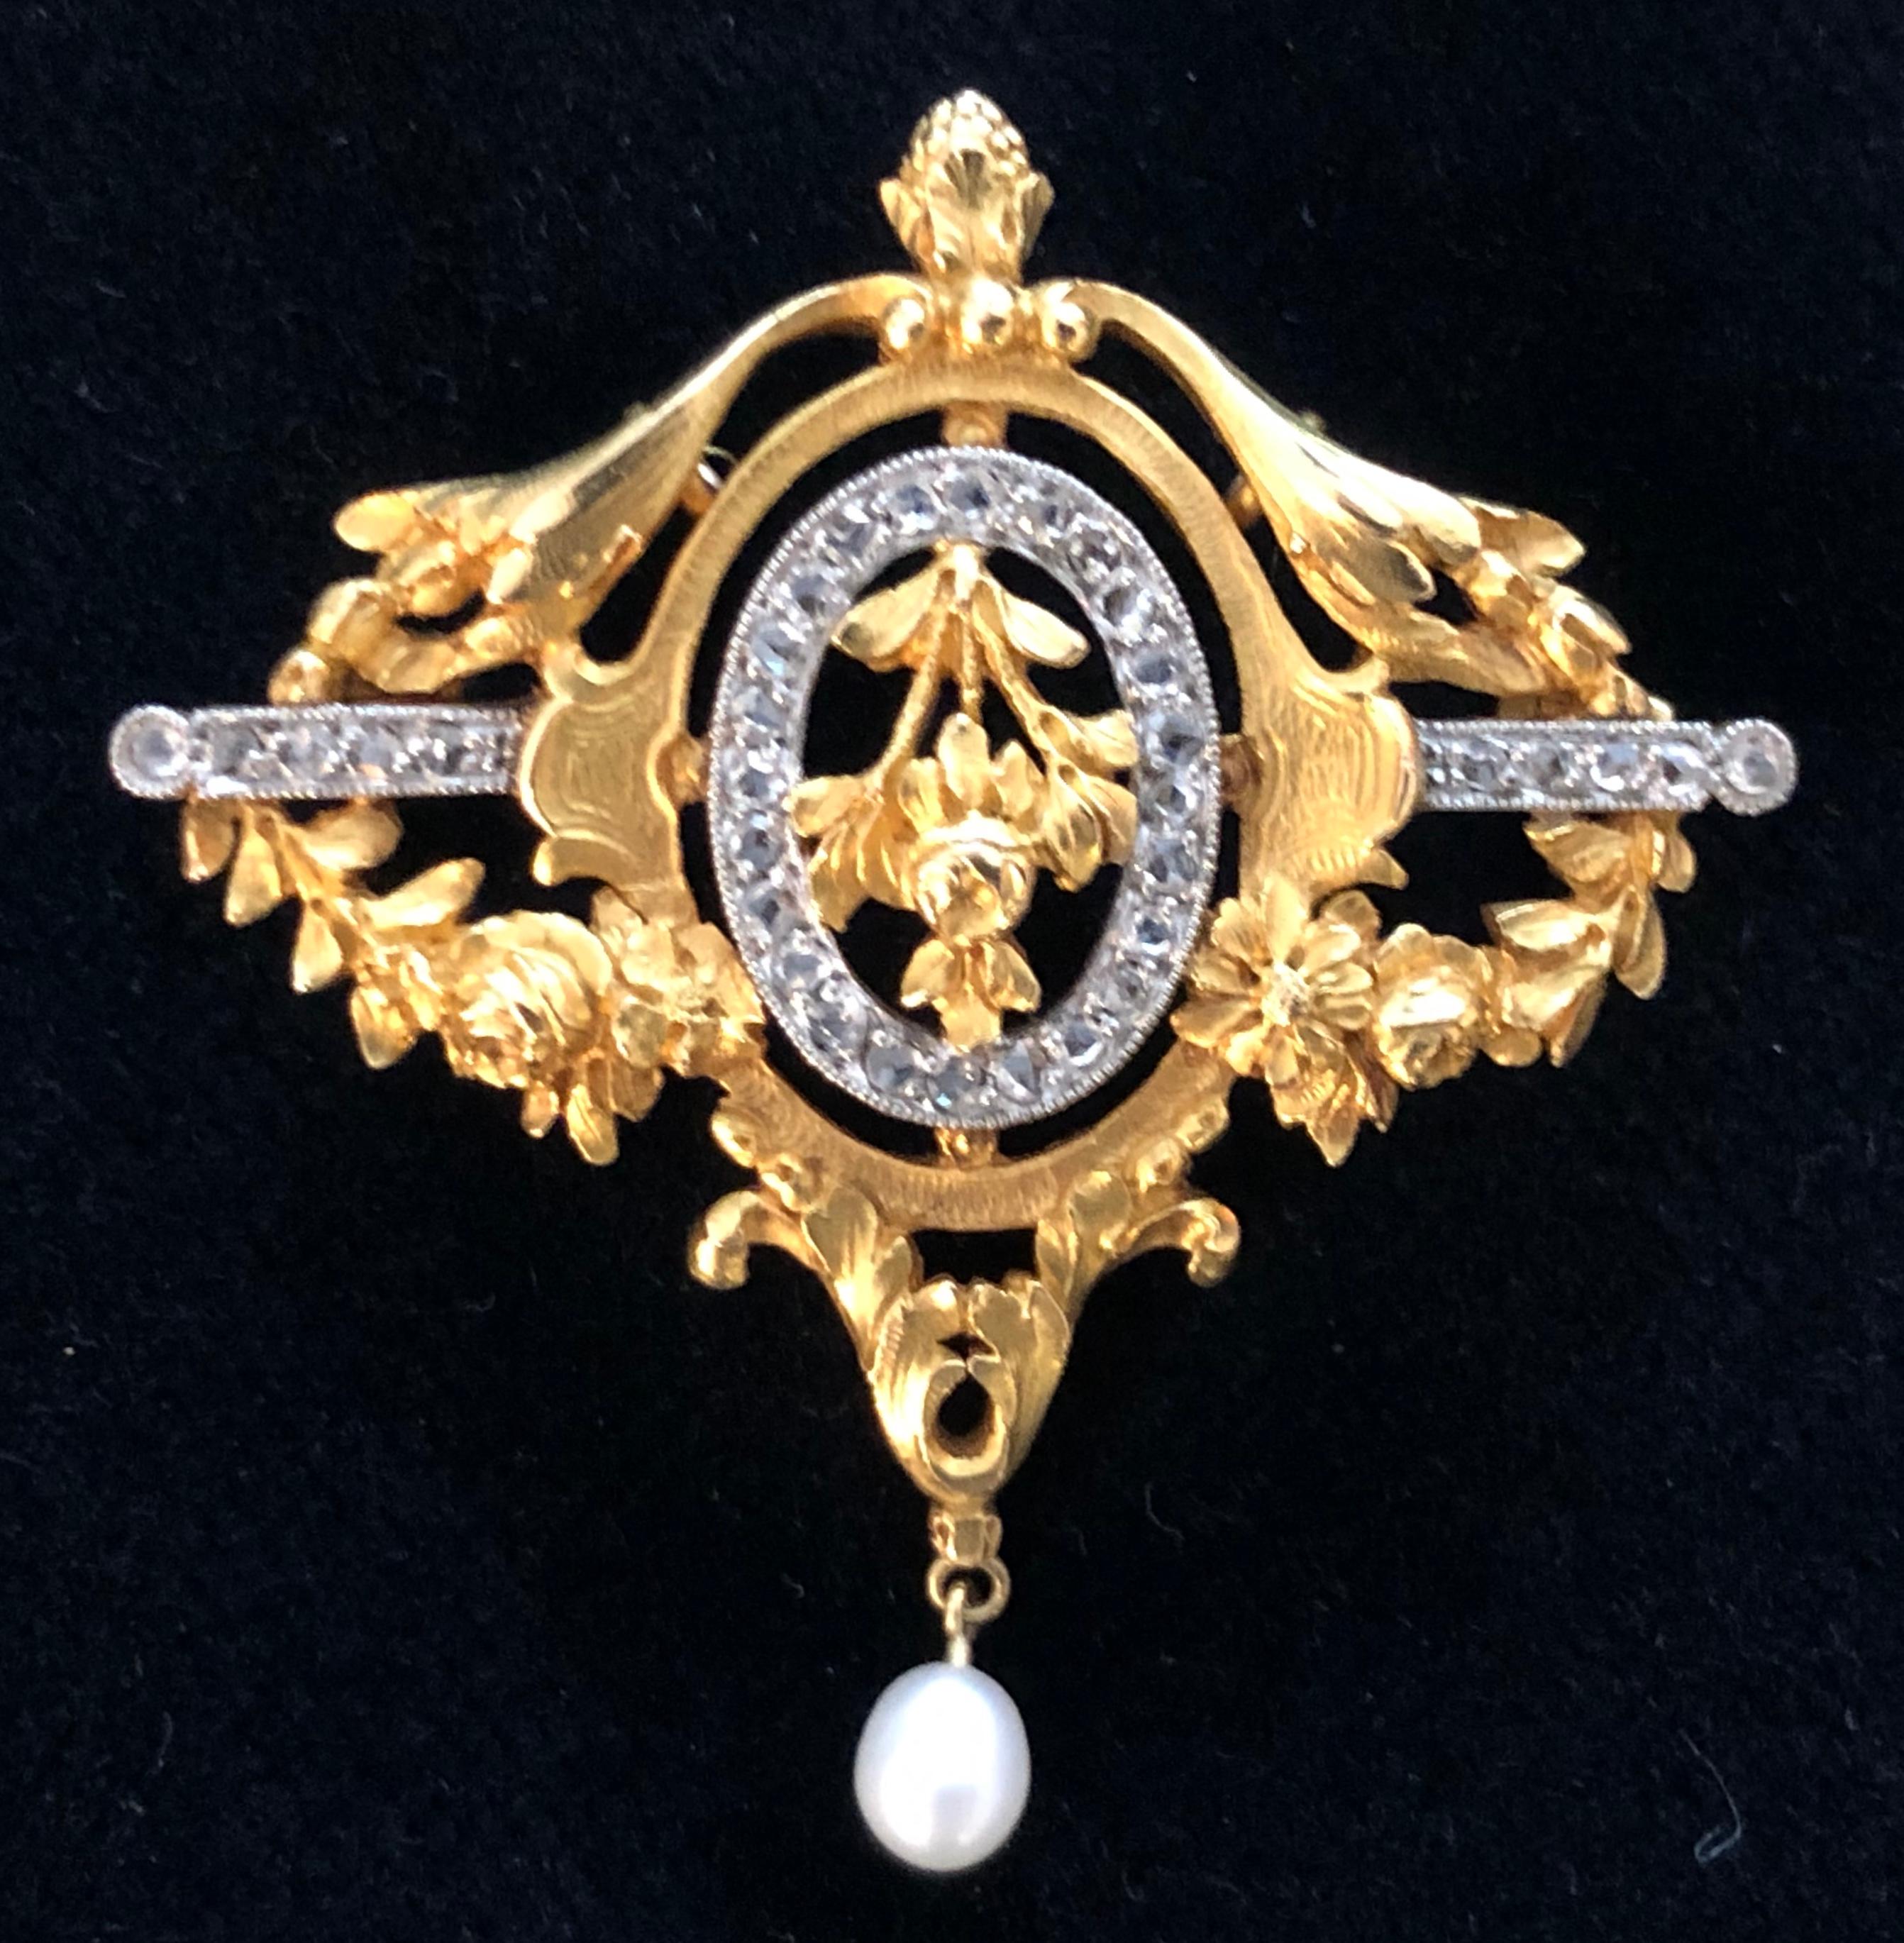 Antique French Art Nouveau Brooch Pendant 18 Karat Gold Platinum Diamonds Pearl For Sale 1